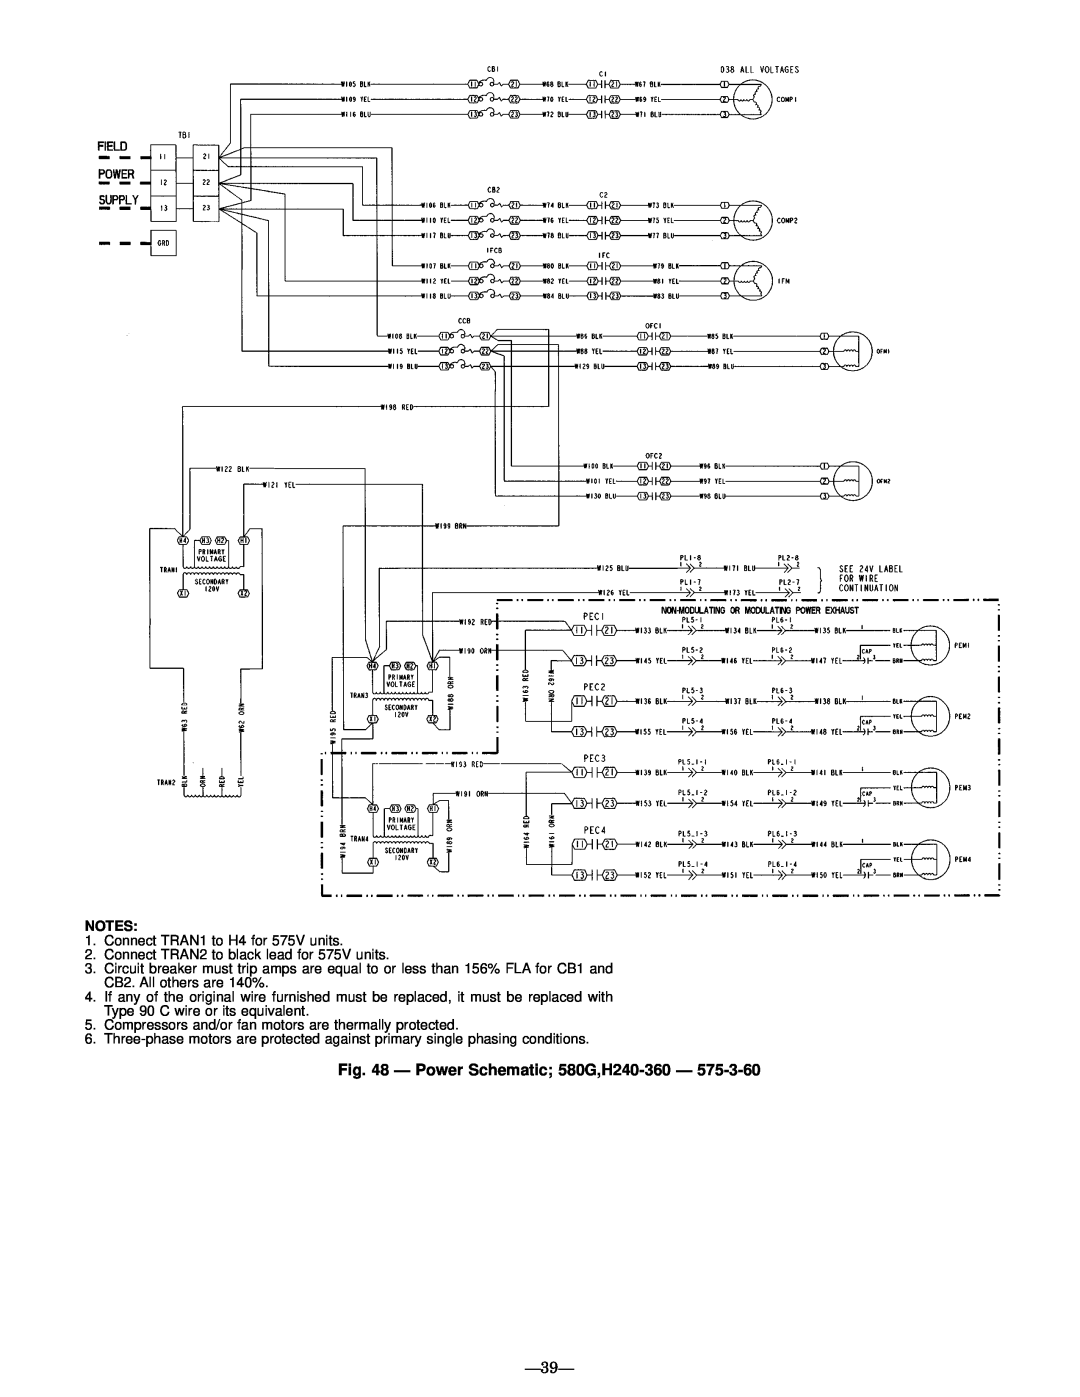 Bryant manual Ð Power Schematic 580G,H240-360Ð, Ð39Ð 